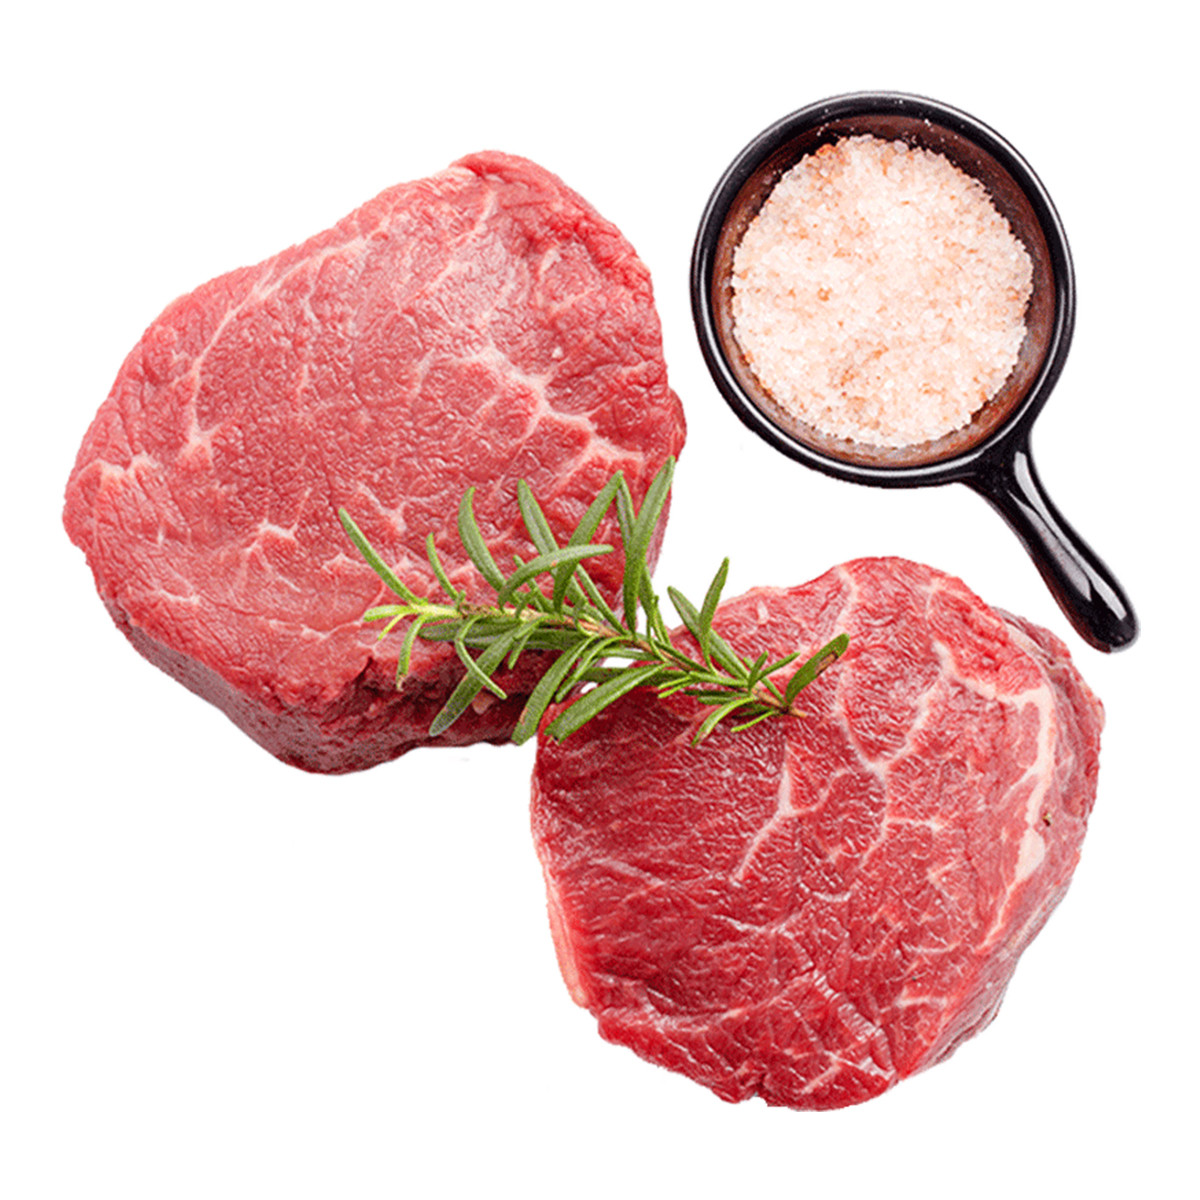 进口原切菲力牛排1200g非腌制儿童惠灵顿牛排厚切新鲜肉类